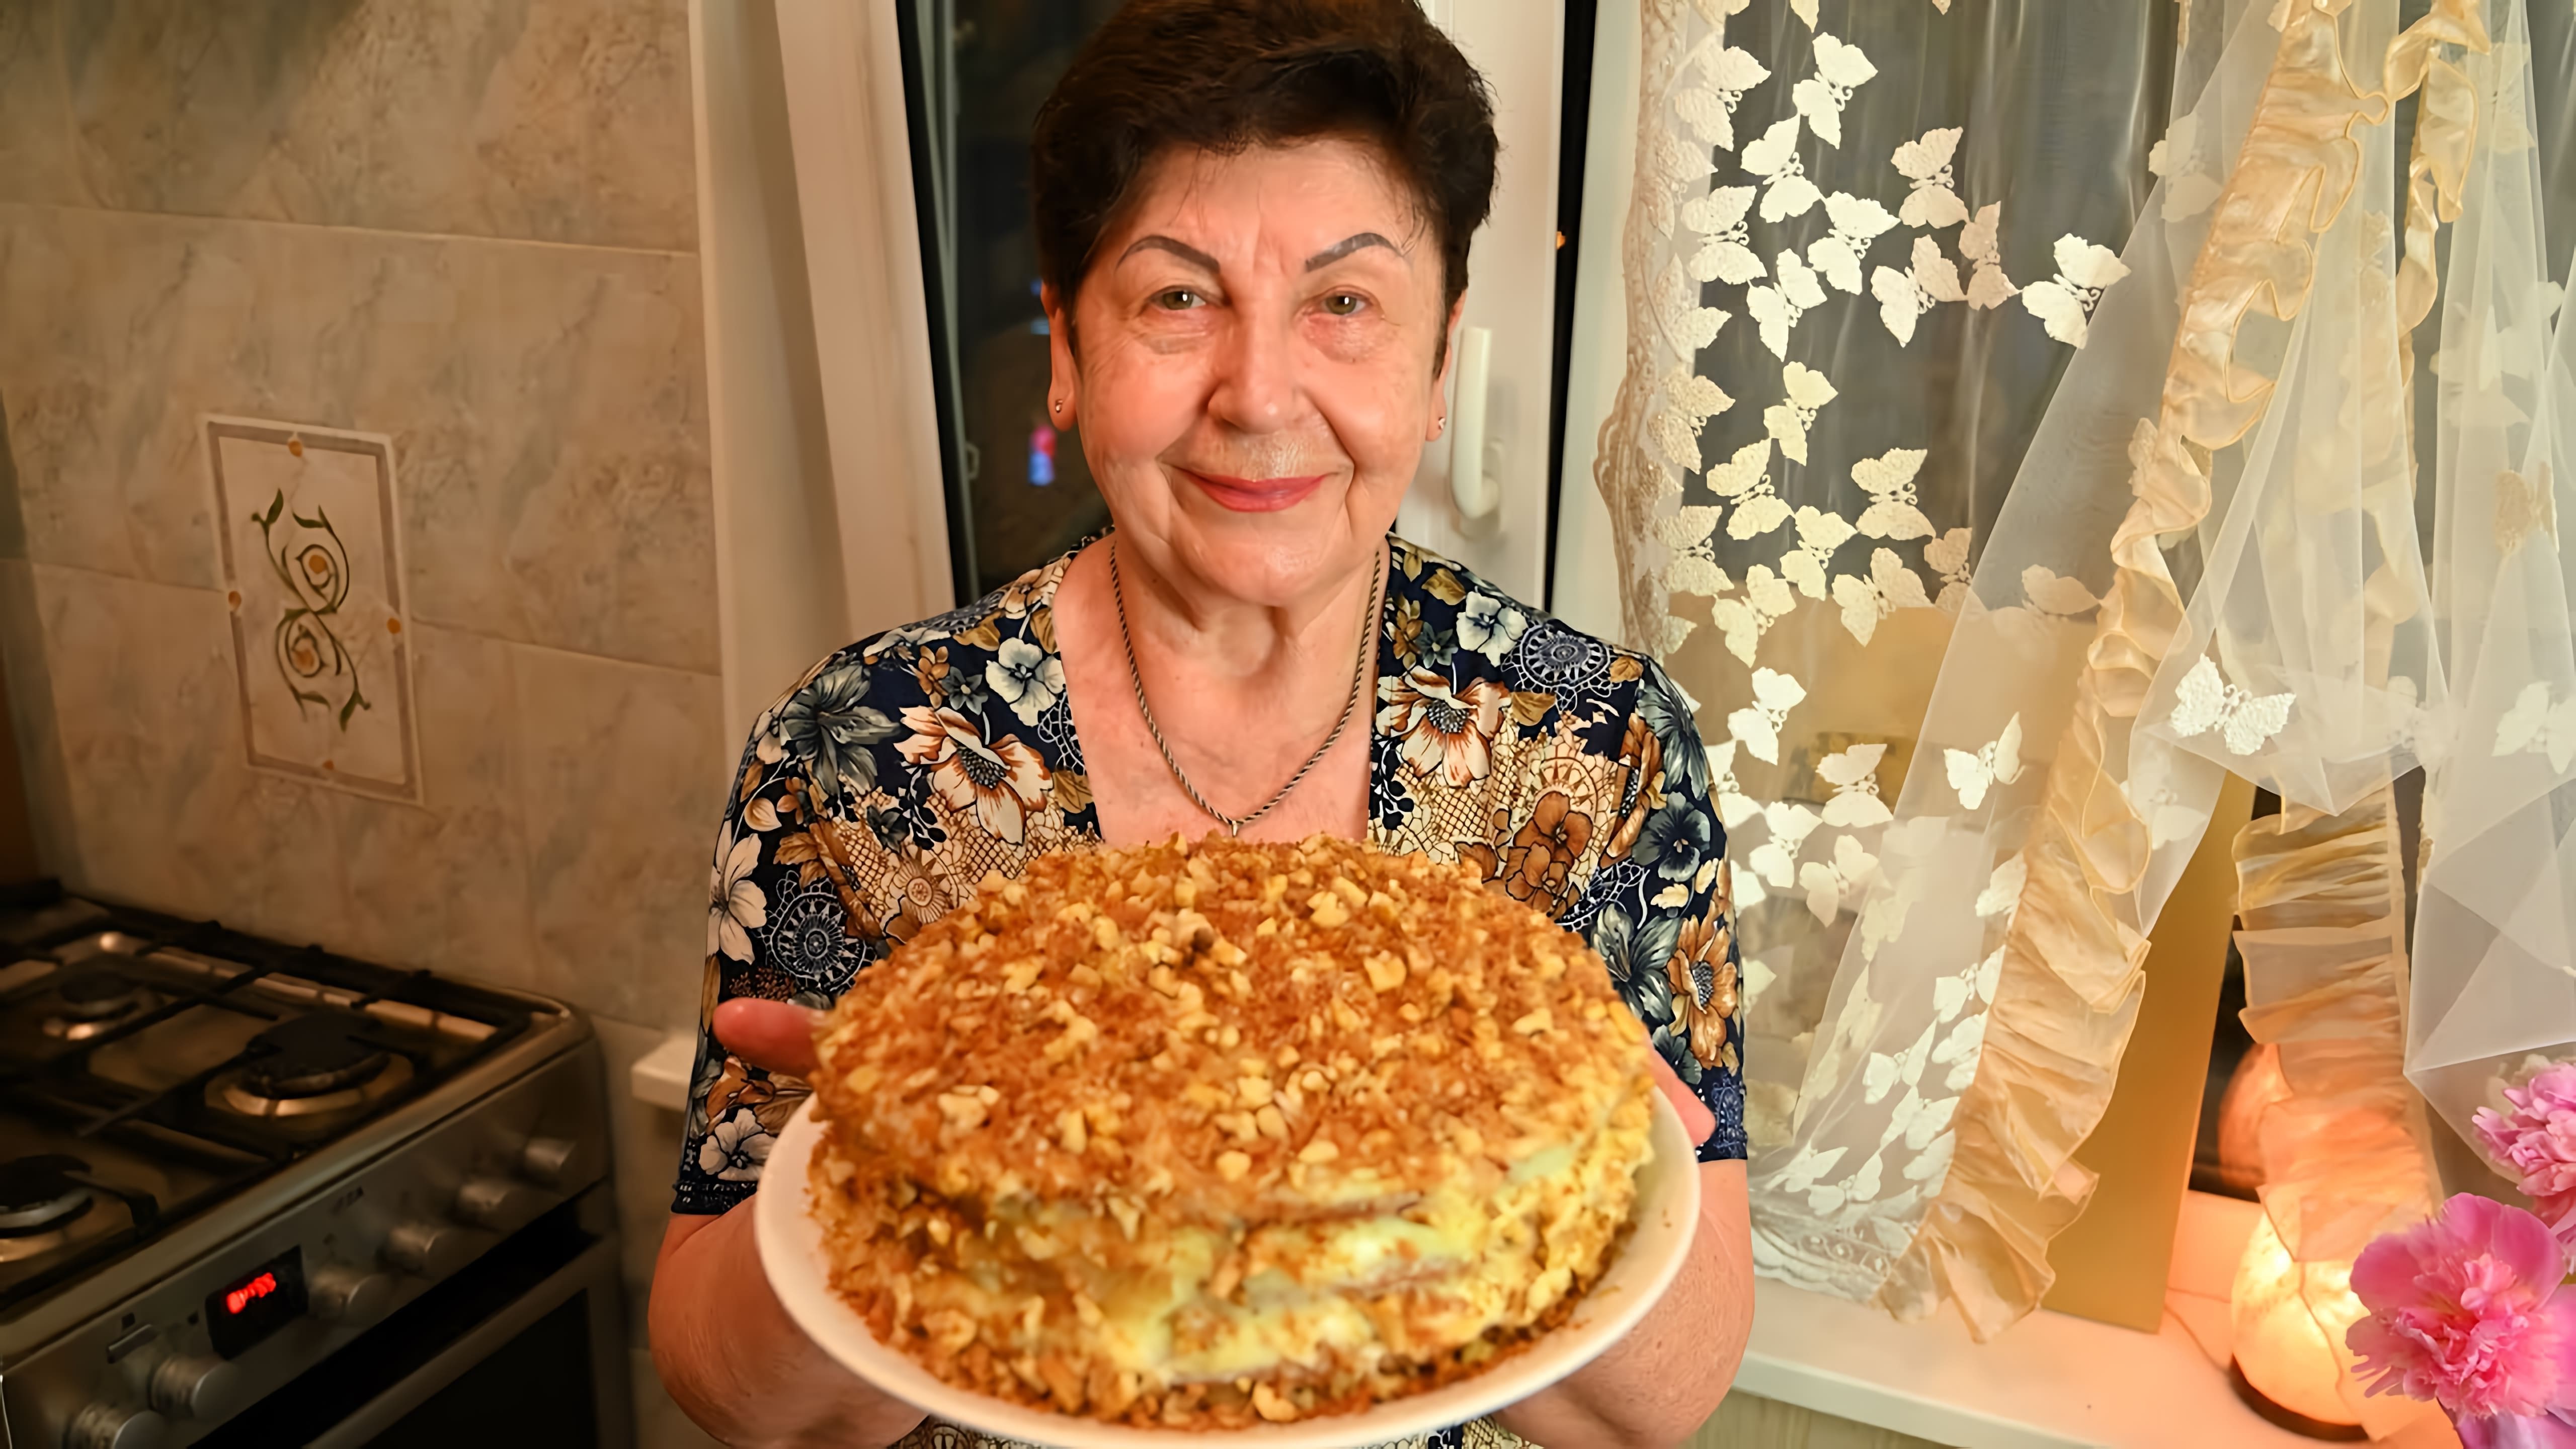 В этом видео демонстрируется процесс приготовления торта "Пенсионерский" от мамы автора